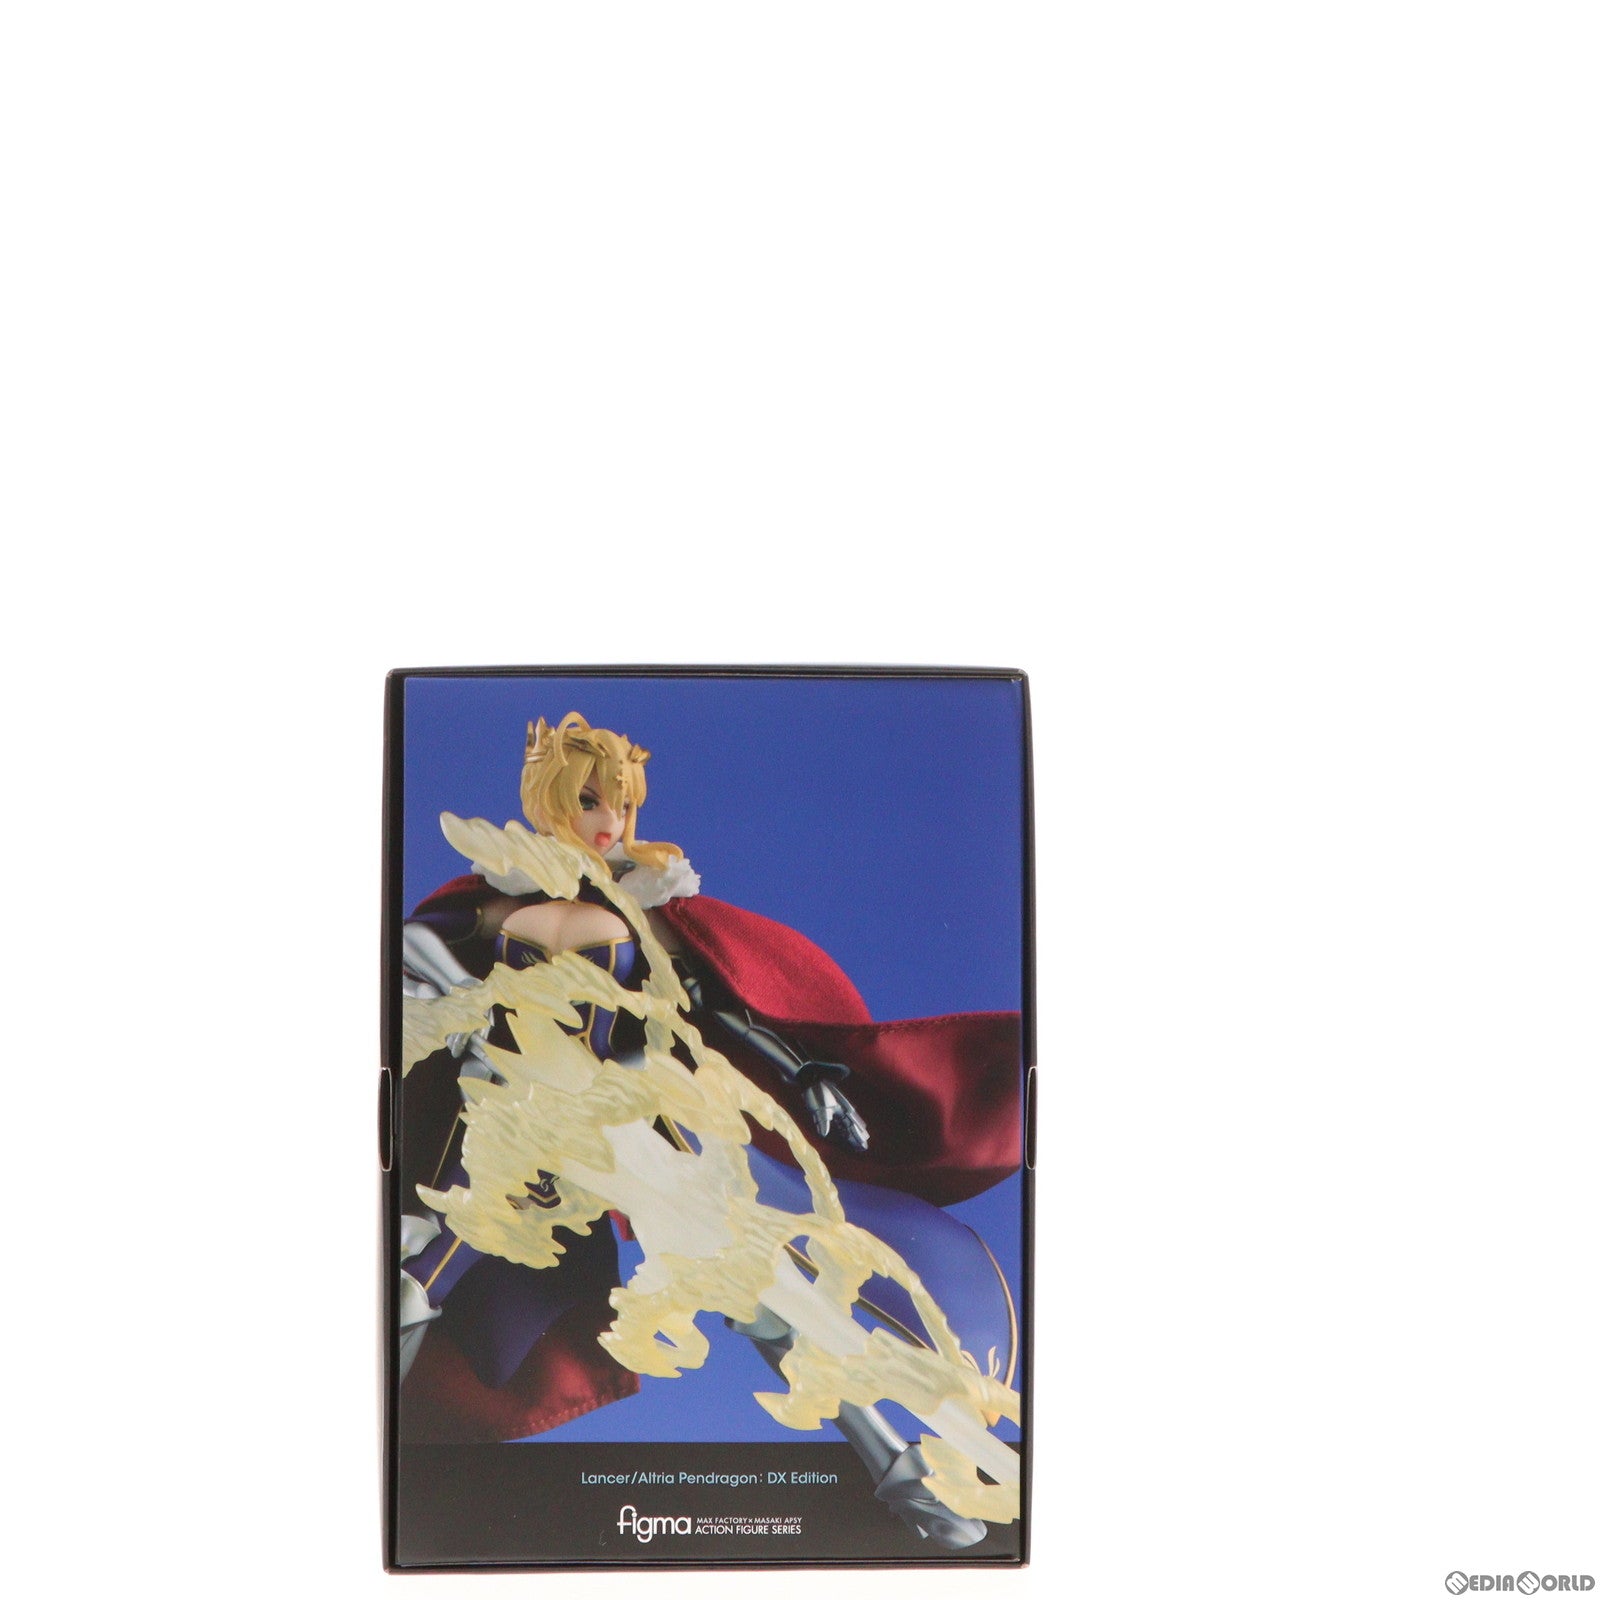 【中古即納】[FIG]figma ランサー/アルトリア・ペンドラゴン DX Edition 「Fate/Grand Order」 GOODSMILE ONLINE SHOP&Amazon.co.jp&あみあみ限定 フィギュア マックスファクトリー(20230526)